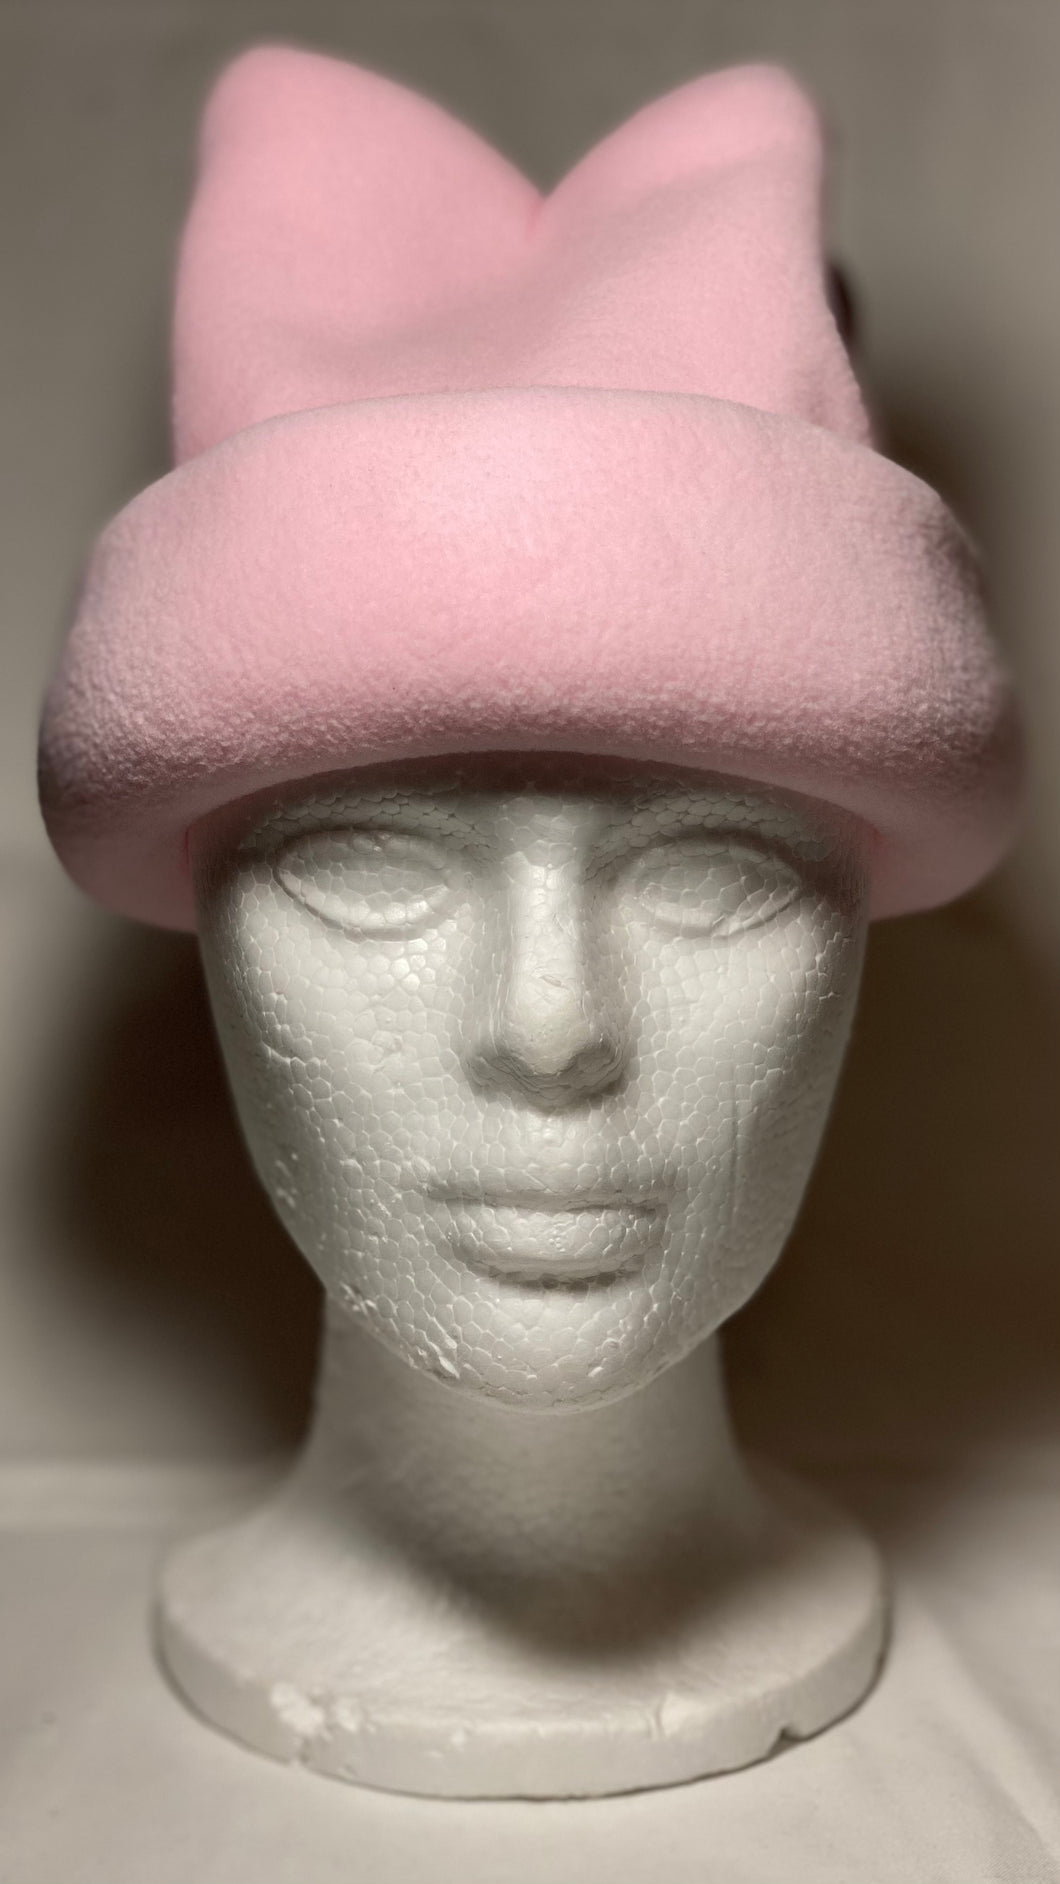 Pink Fleece Hat